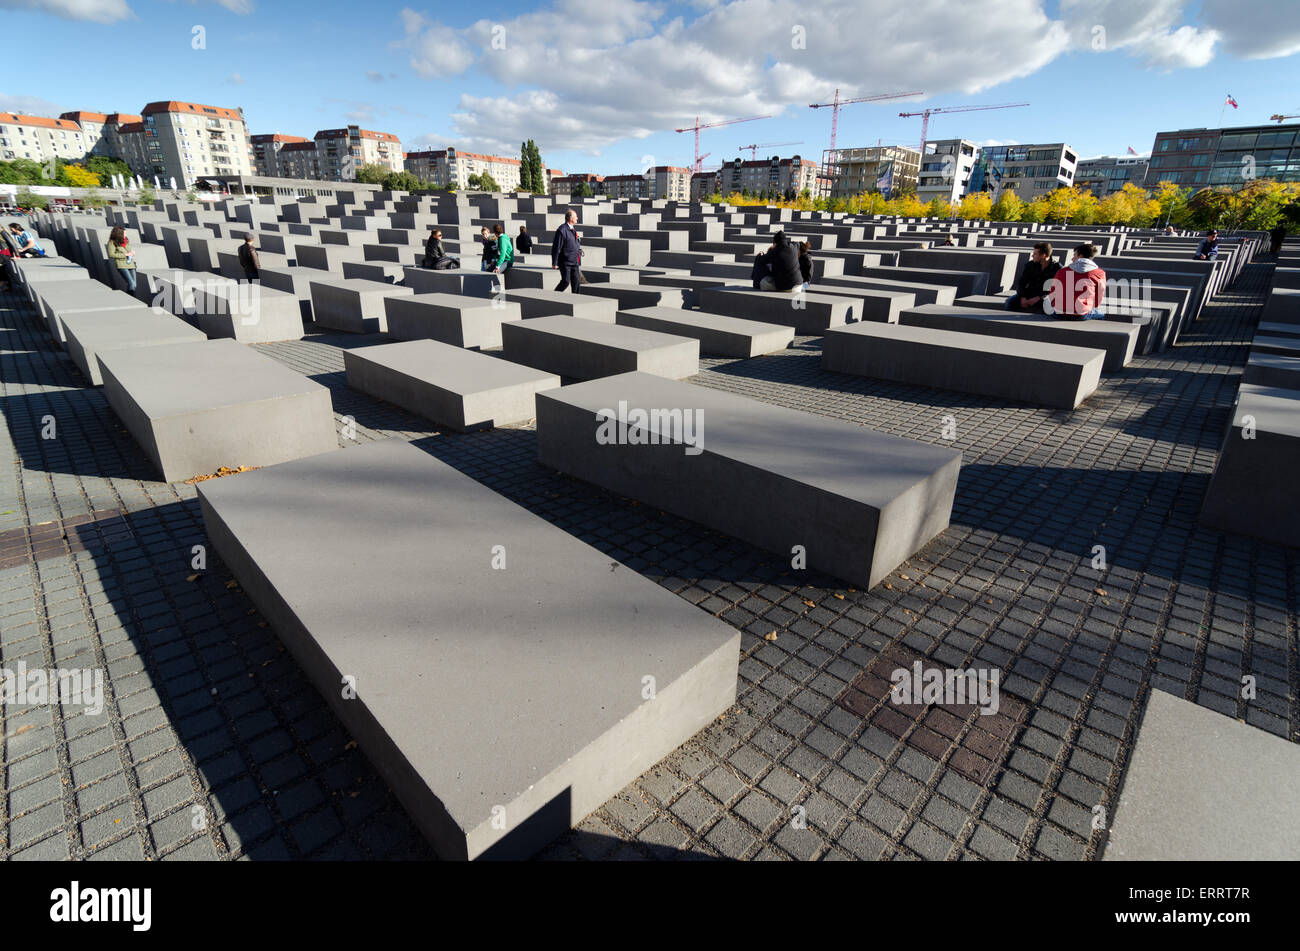 BERLIN, Deutschland - 29. September 2013: Das Denkmal für die ermordeten Juden Europas auch bekannt als das Holocaust-Mahnmal. Entwickelt Stockfoto